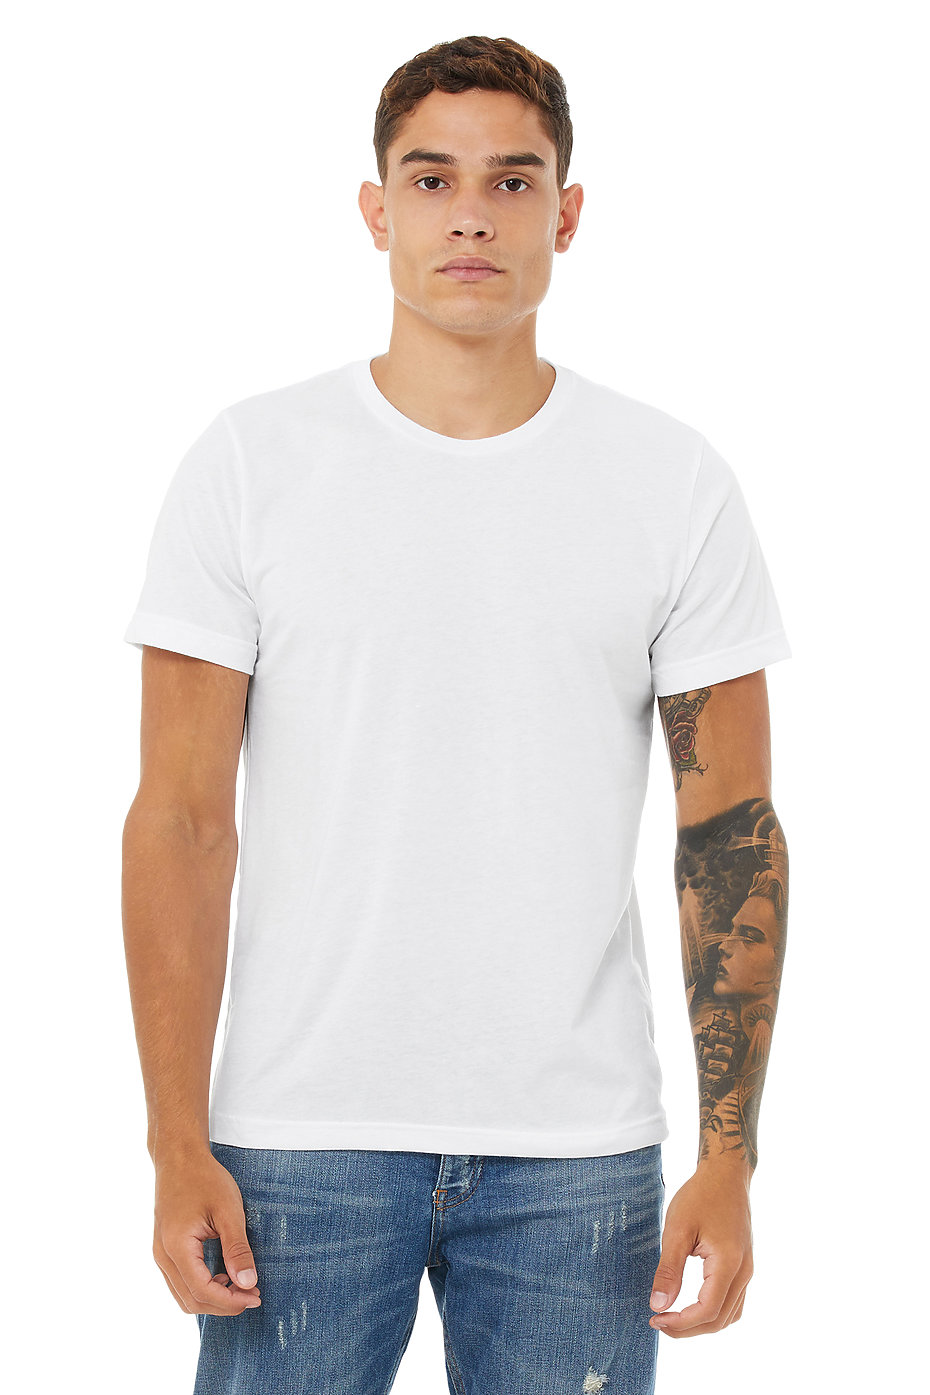 Unisex Poly Cotton Shirts, Unisex Wholesale Clothing, Bulk, Plain Blank T  Shirts